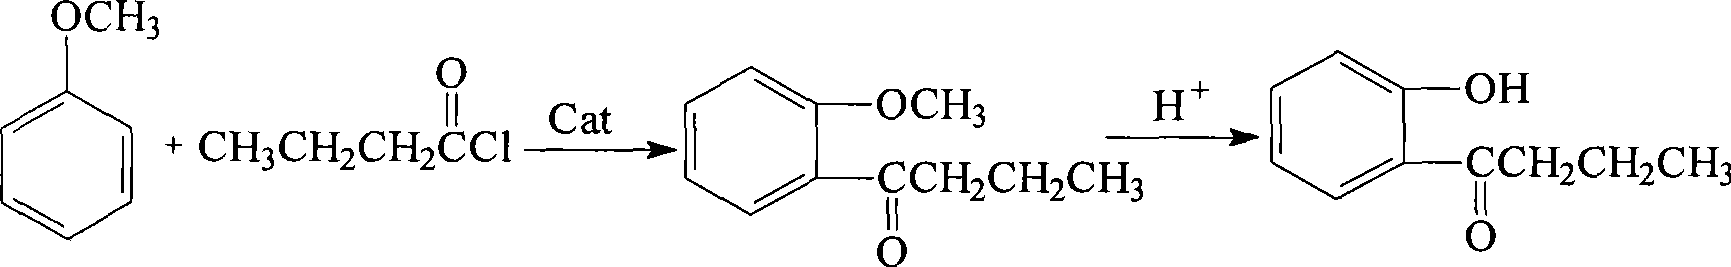 Method for preparing 1-o-hydroxyphenyl butanone